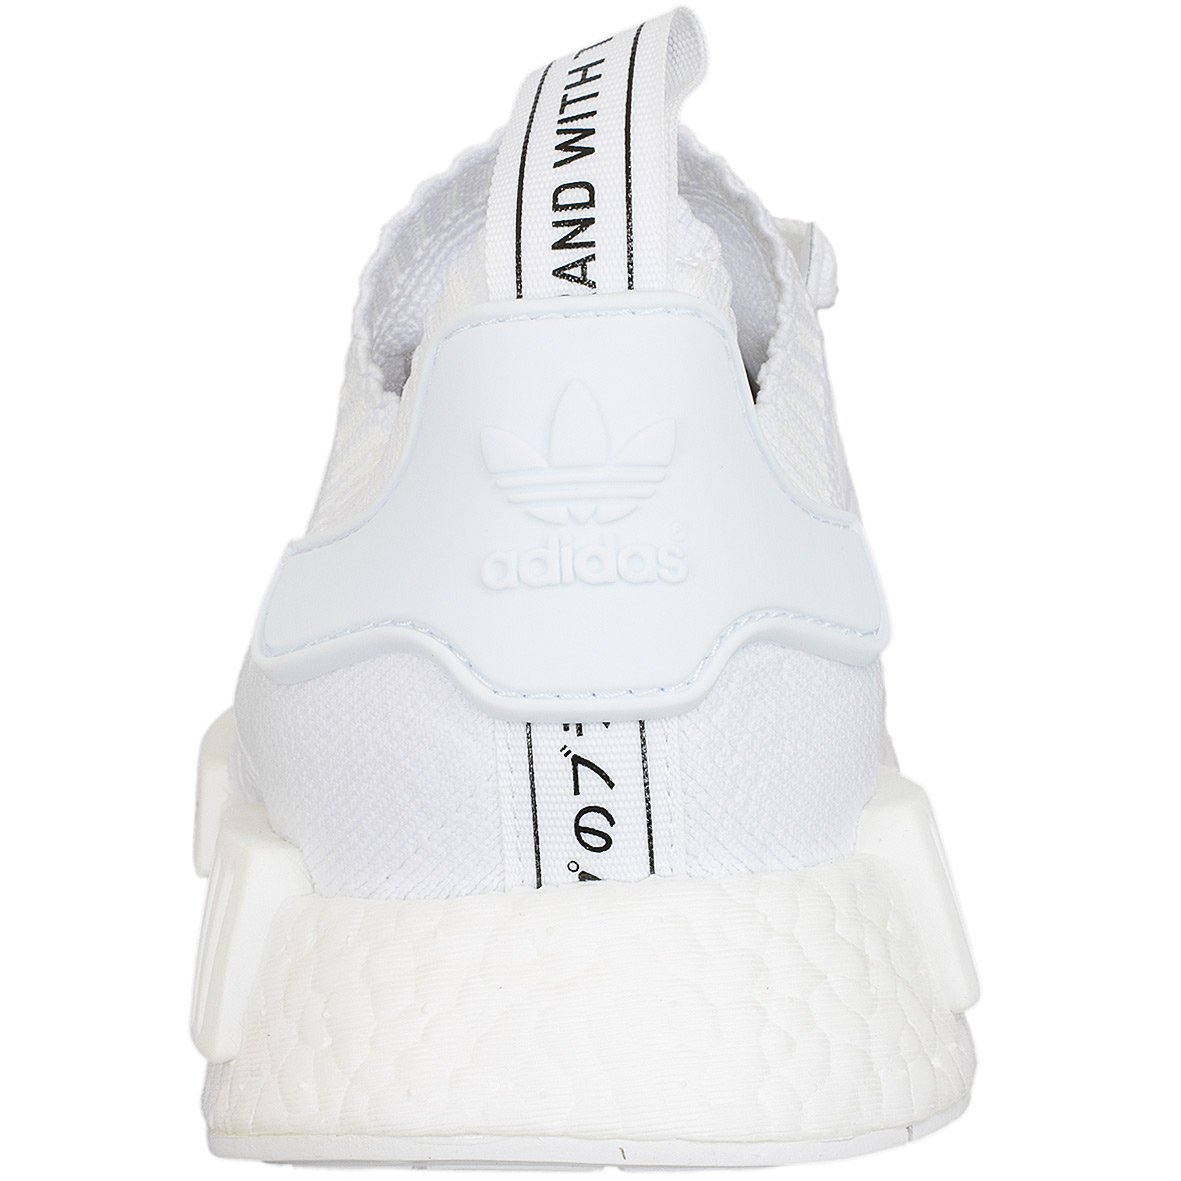 ☆ Adidas Originals Sneaker NMD R1 weiß/weiß hier bestellen!